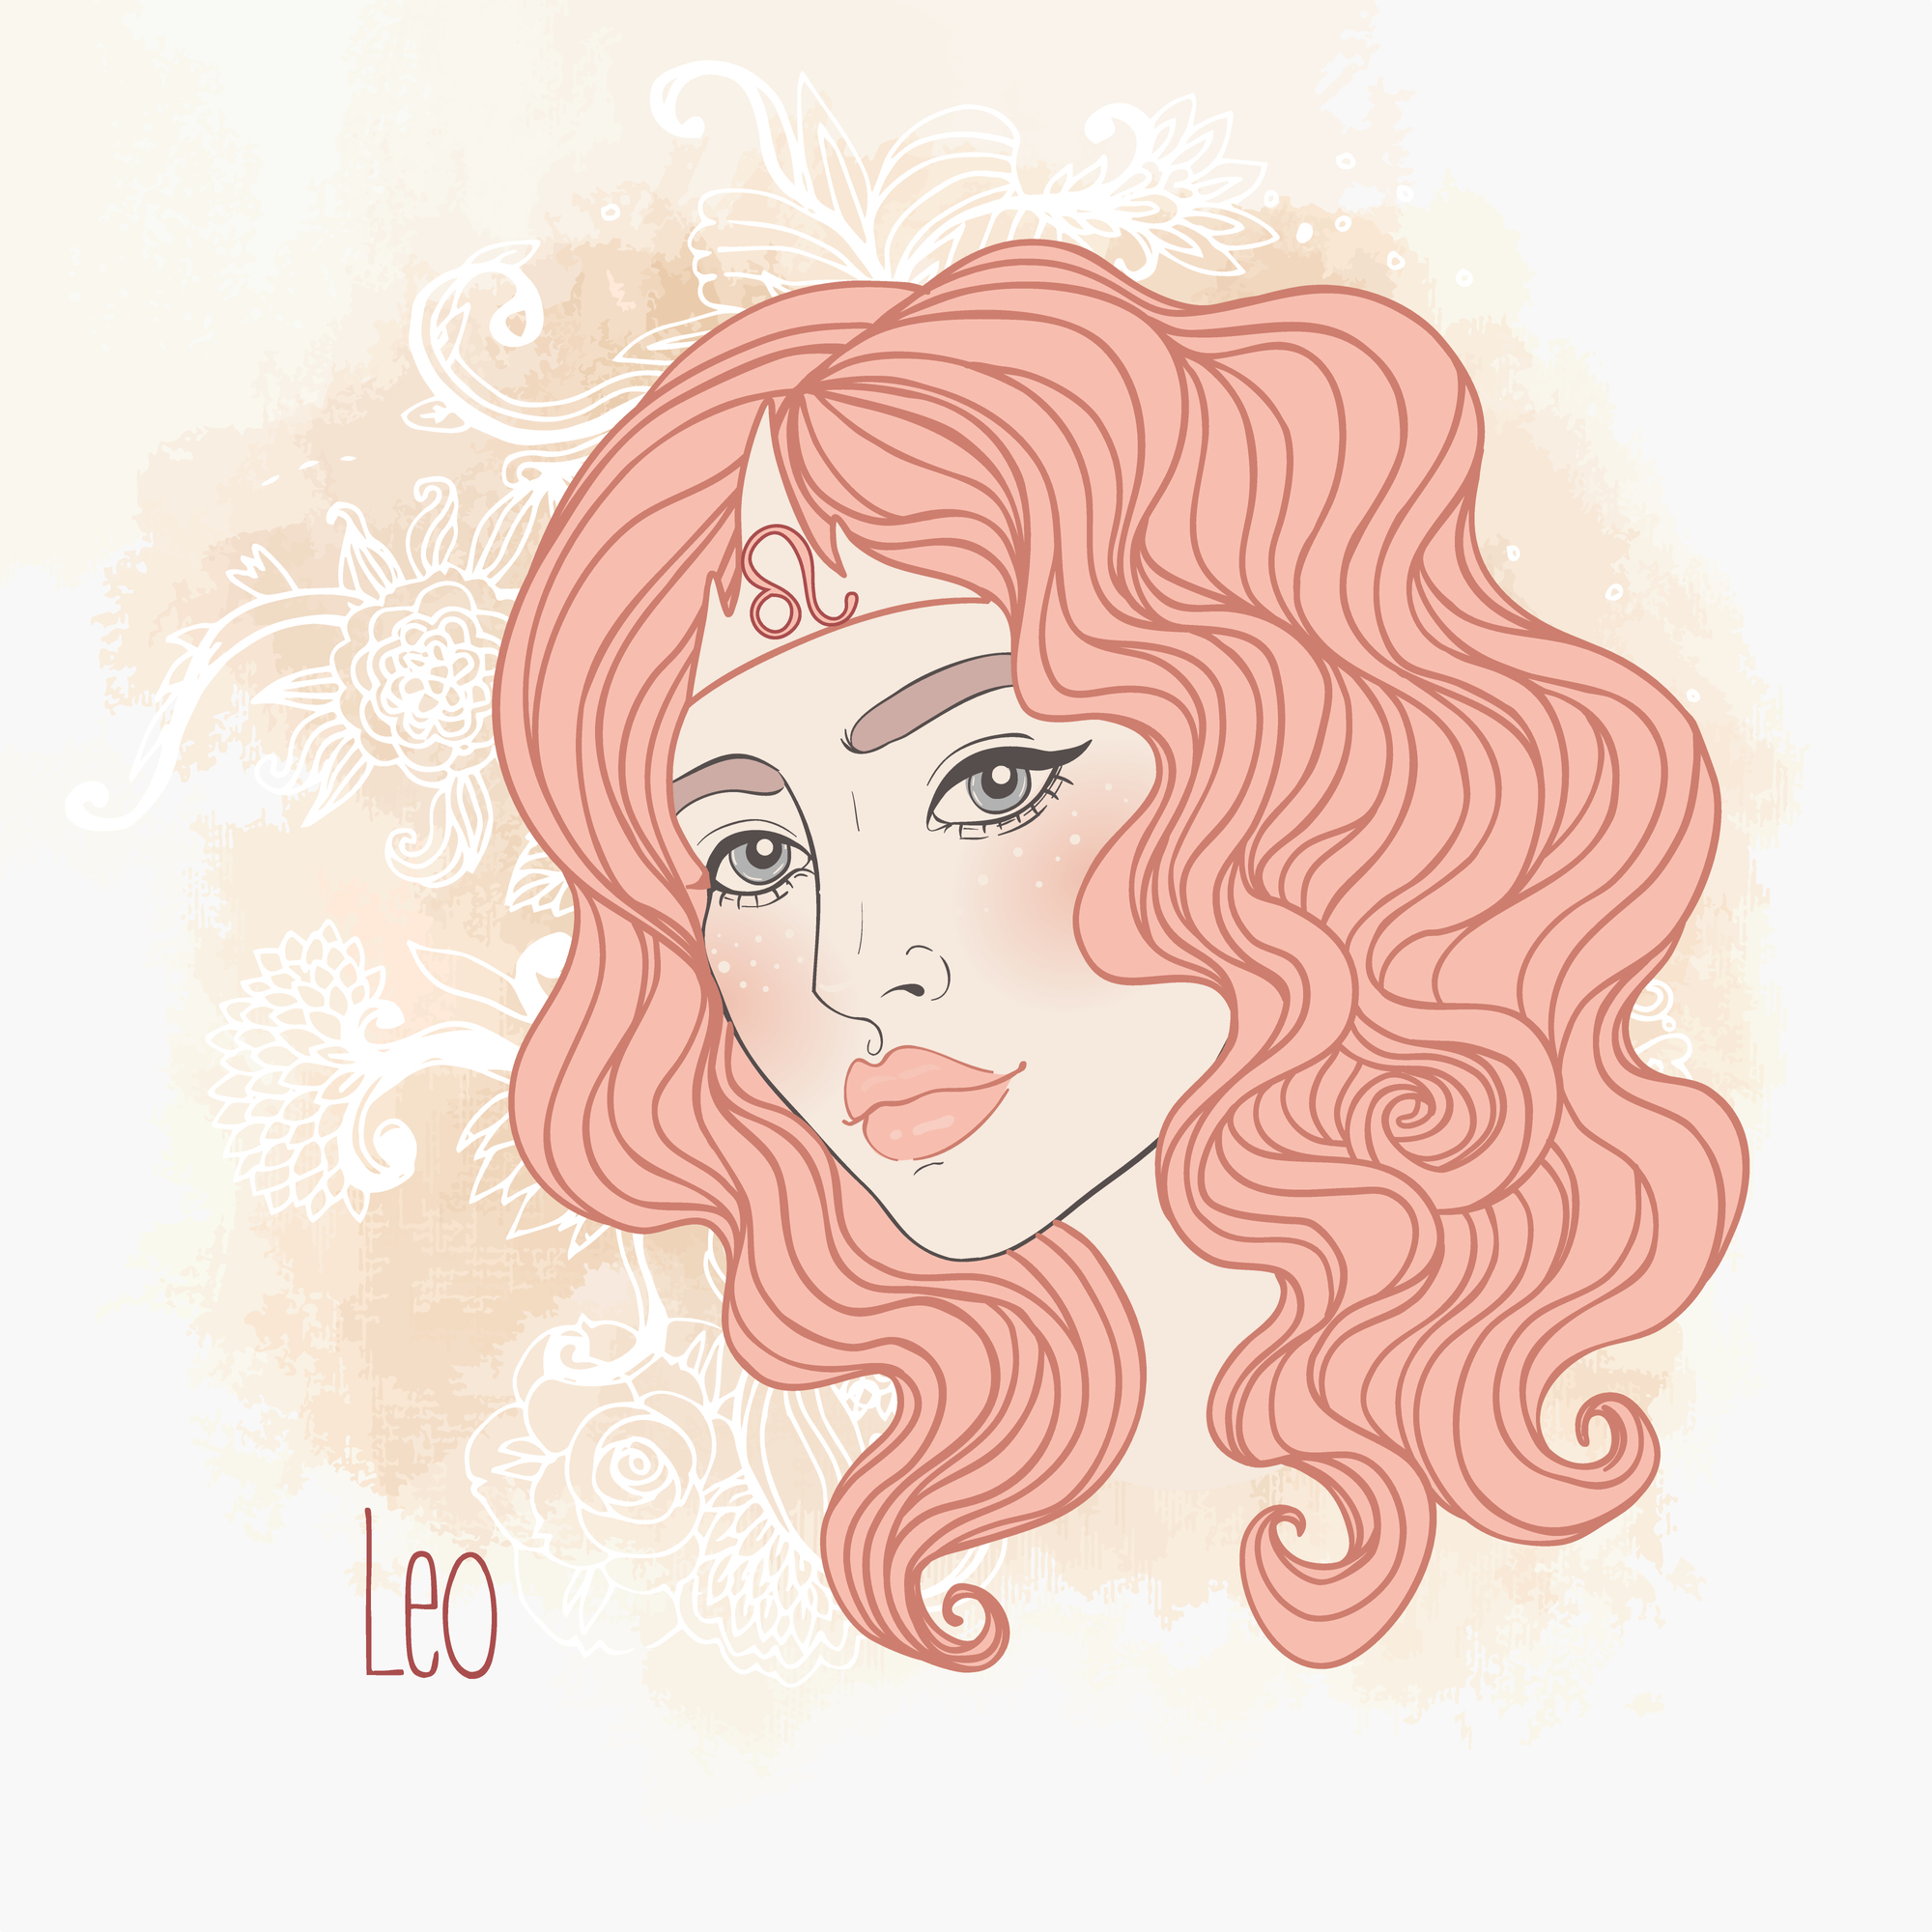 Ilustrația semnului zodiacal Leu sub forma unei femei frumoase, cu părul roșcat și simblul zodiei Leu așezat pe frunte.